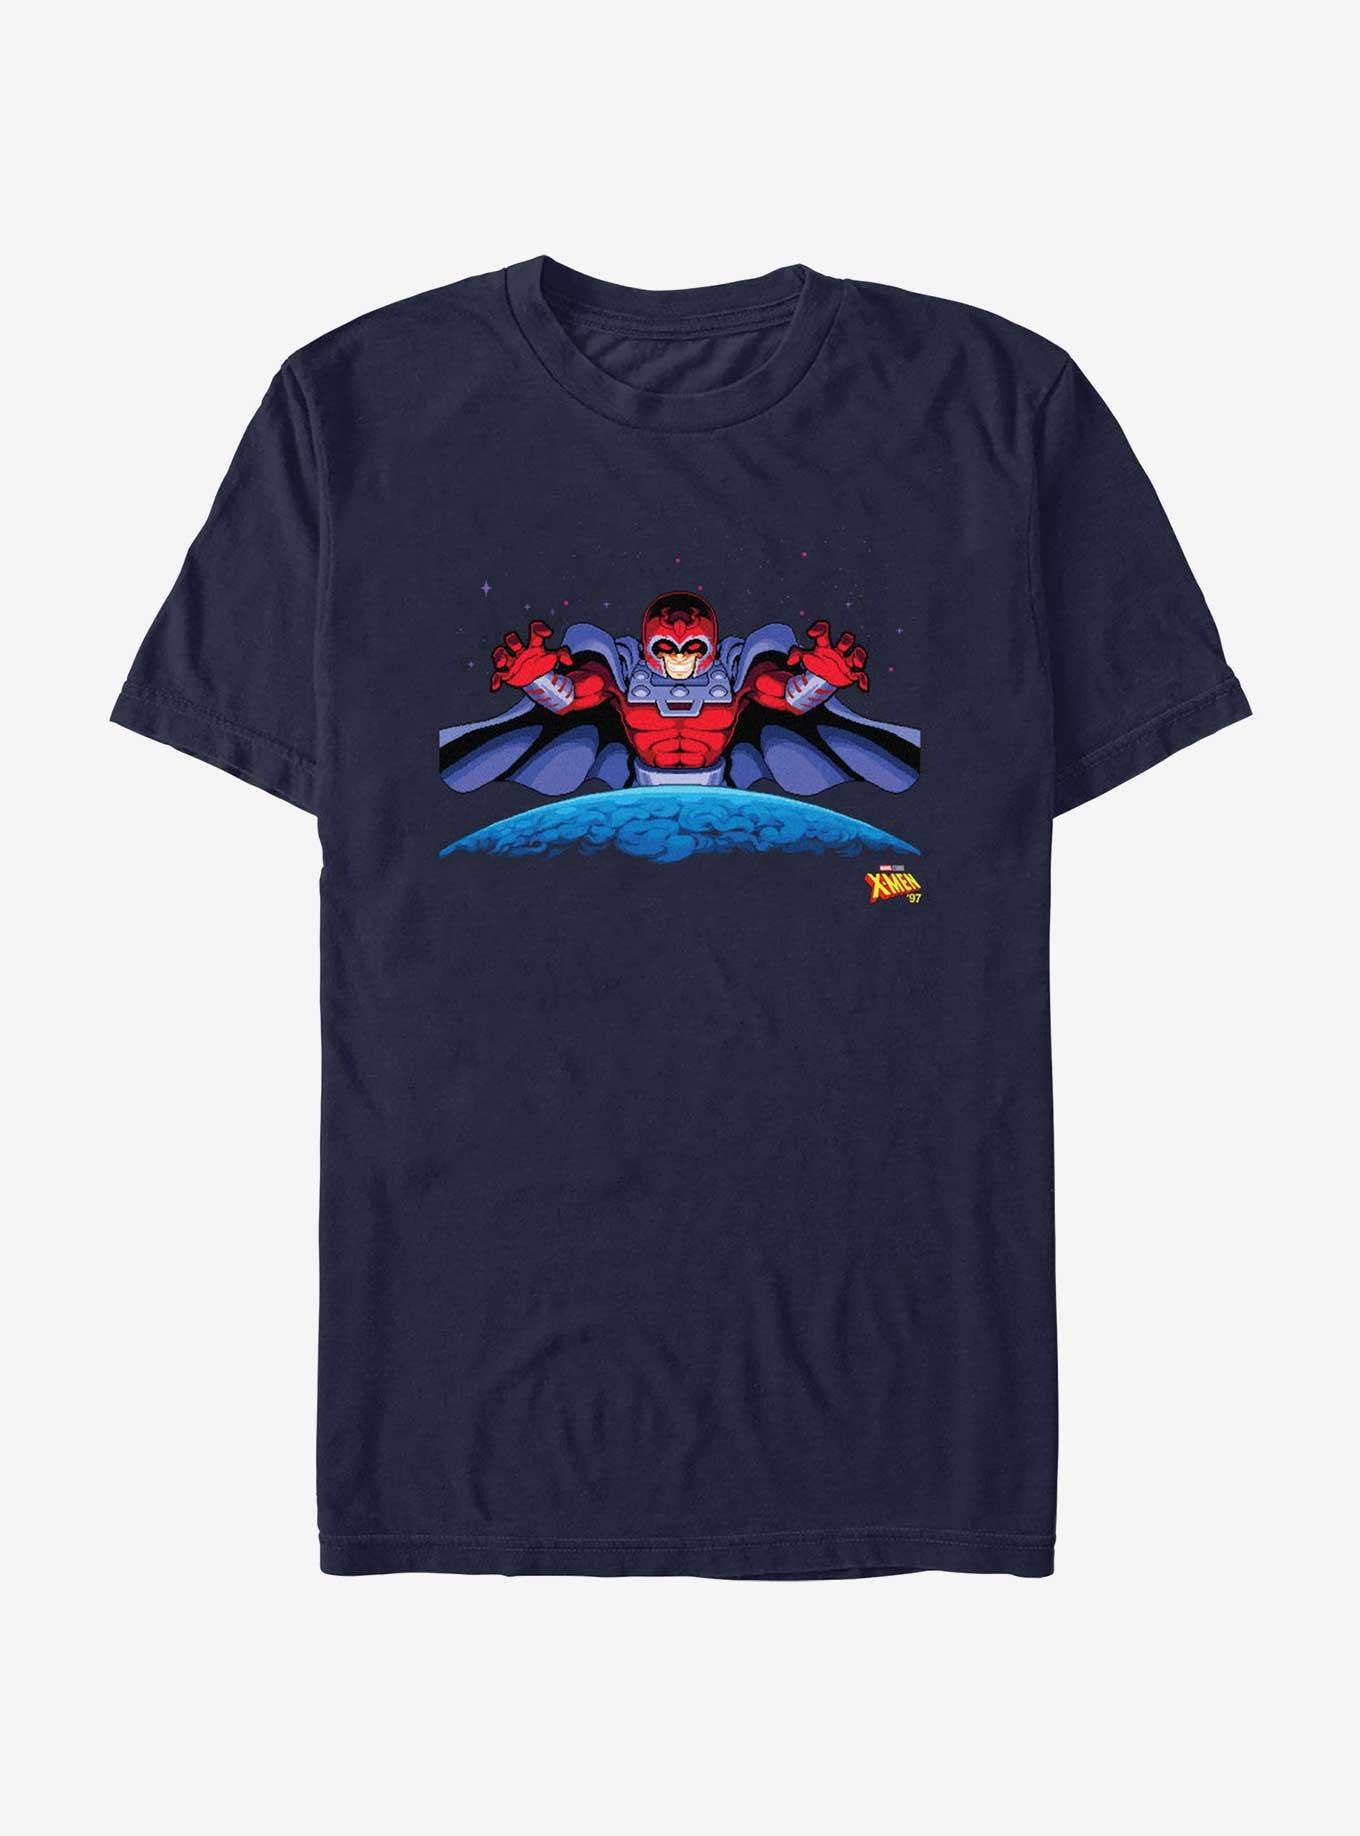 X-Men '97 Magneto T-Shirt, NAVY, hi-res